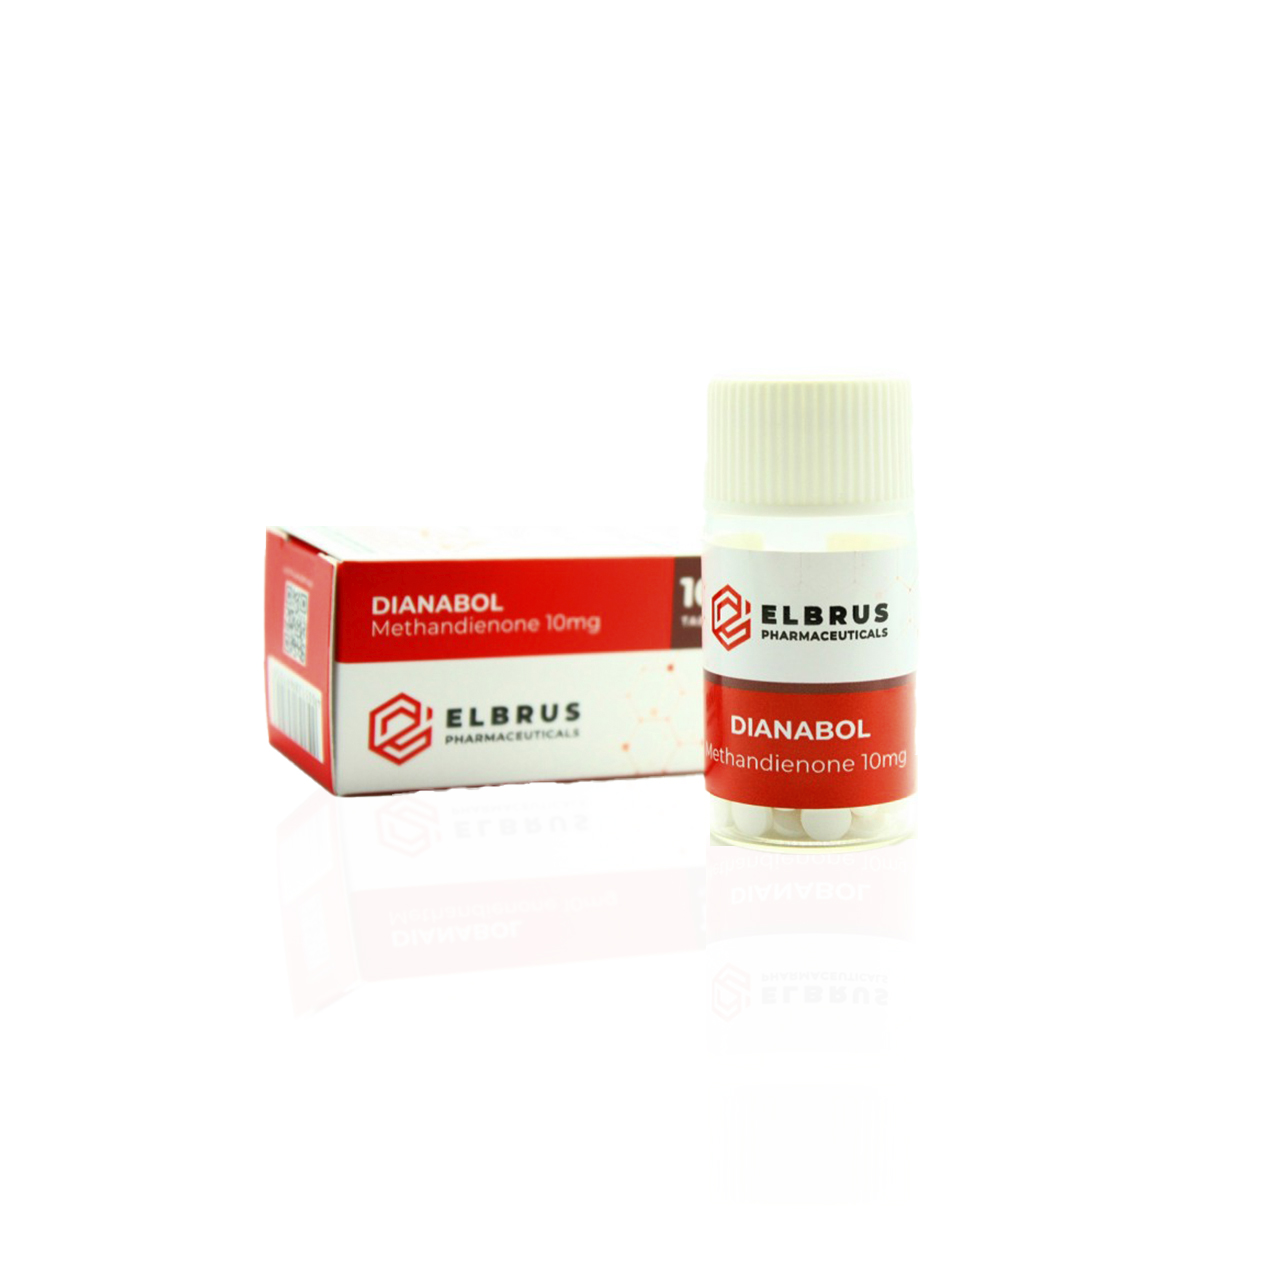 Dianabol (Methandienone) 10 mg Elbrus Pharmaceuticals Methandienone compresse